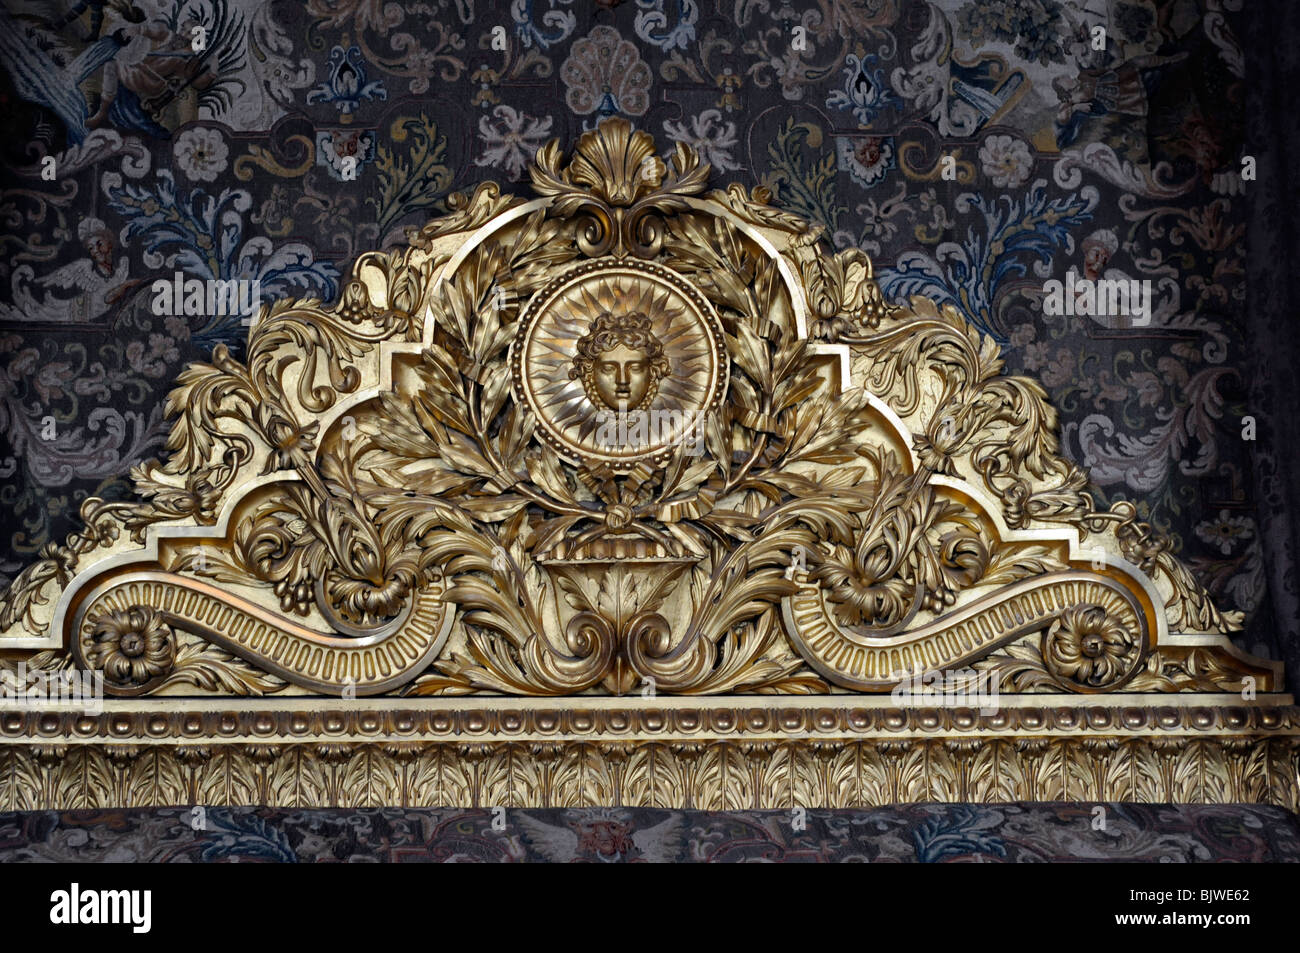 Scrofetta/gold testiera del letto nel salone di mercurio (Drawing Room), il re di Appartamenti di Versailles. Immagine del Re Sole in centro. Foto Stock